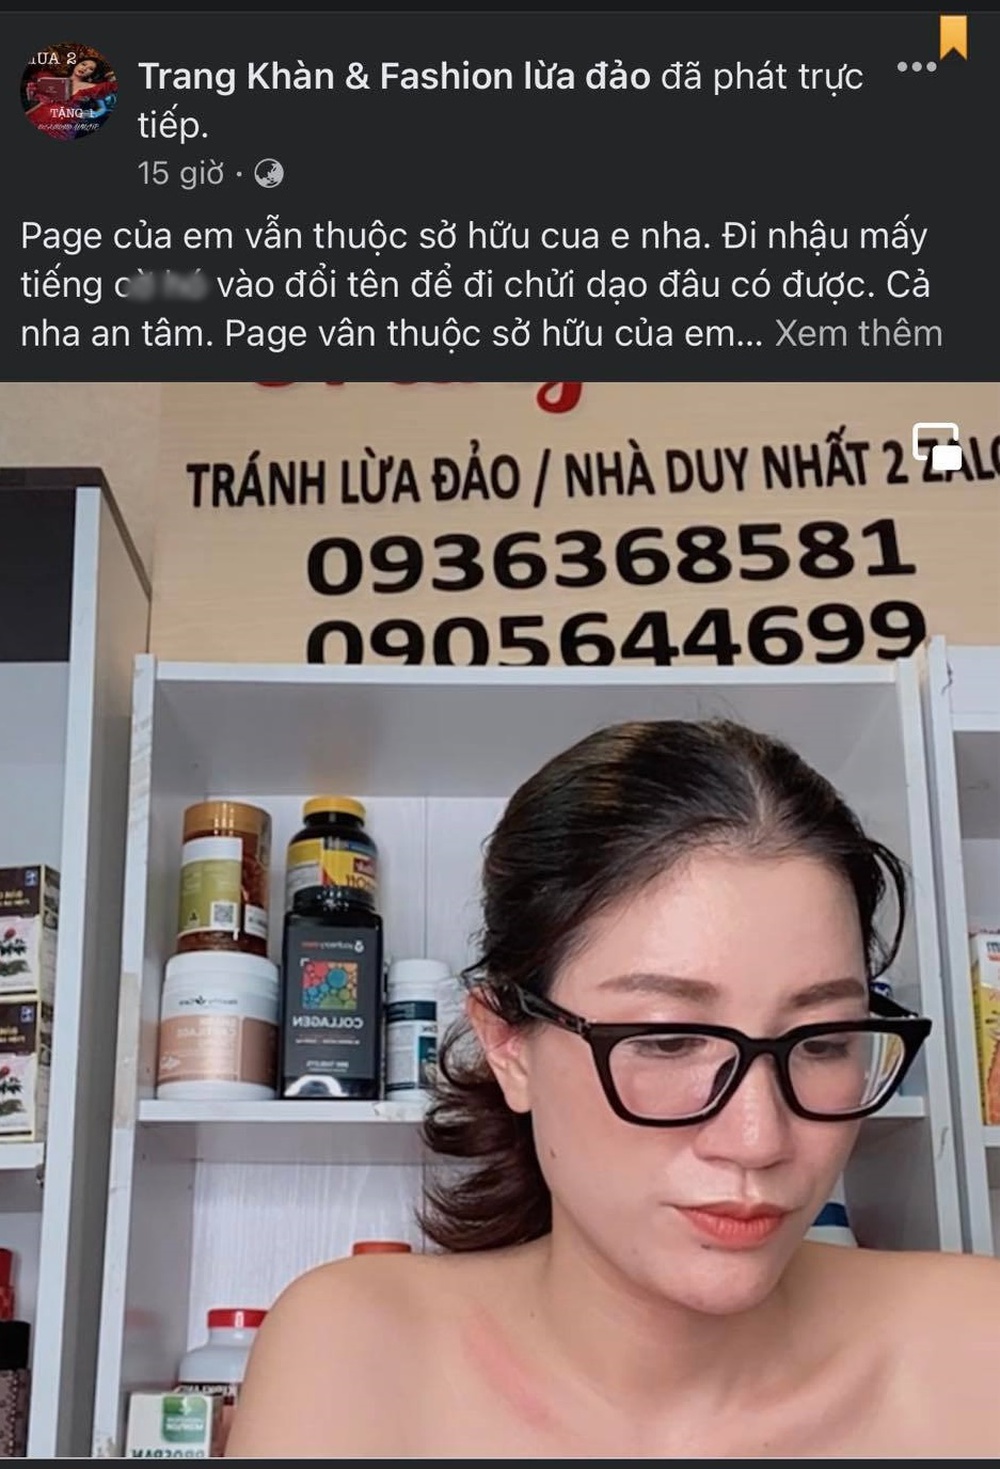 Vừa lên sóng VTV, fanpage của Trang Trần bỗng biến thành Trang Khàn & Fashion lừa đảo - Ảnh 1.